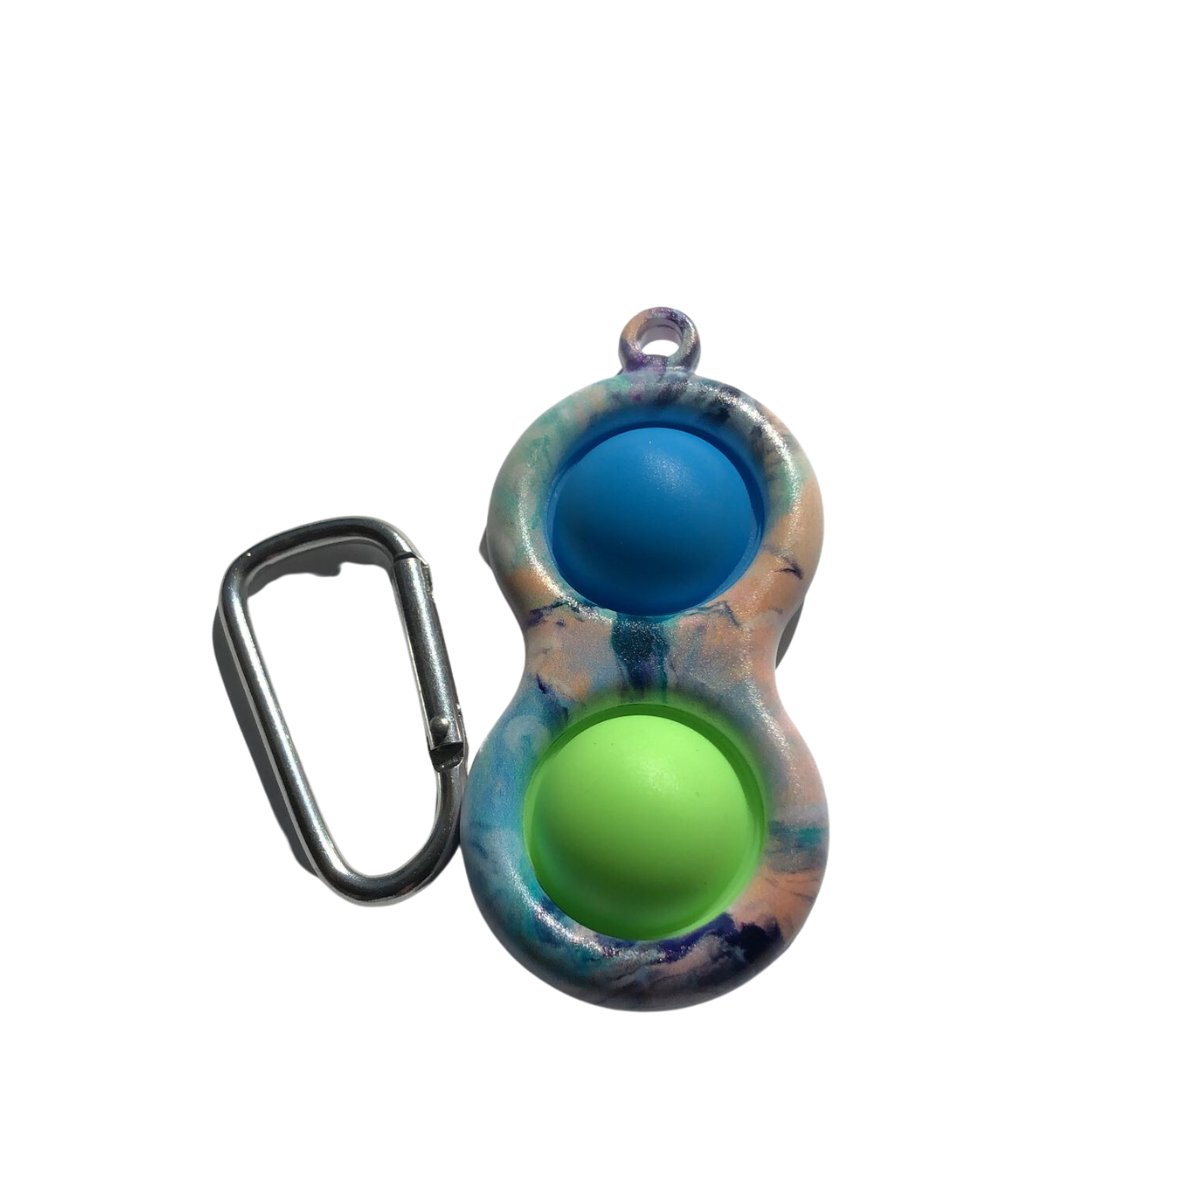 Keychain Bubble Popper Fidget green blue multi color